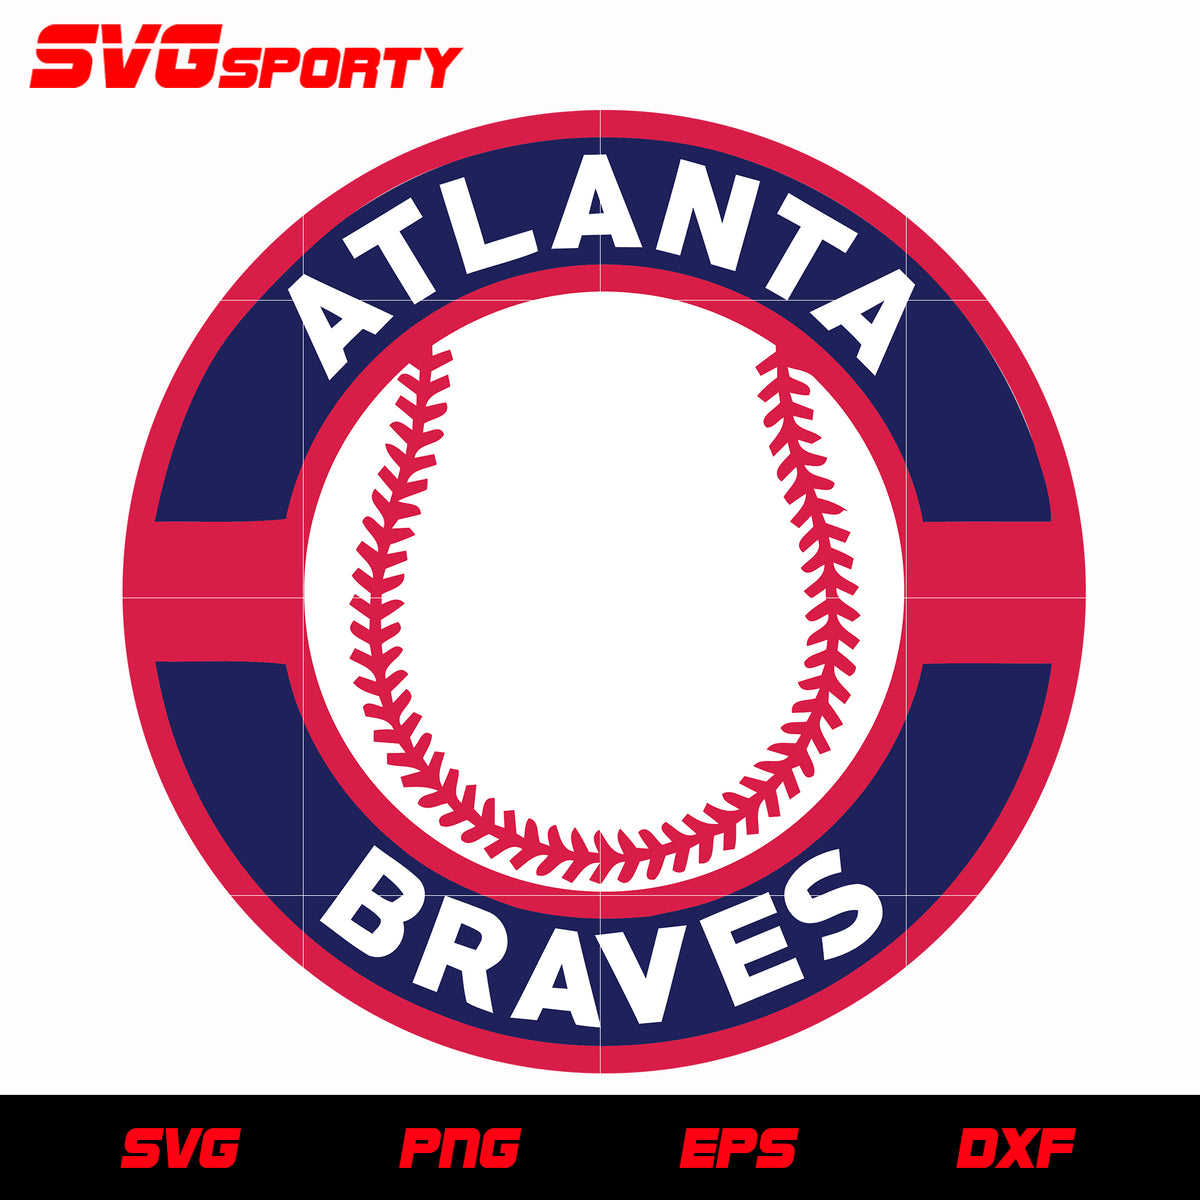 Braves SVG, Braves PNG, Digital Download, Cut File, Clip Art, Sublimation  PNG (individual svg/png/dxf/jpeg files)